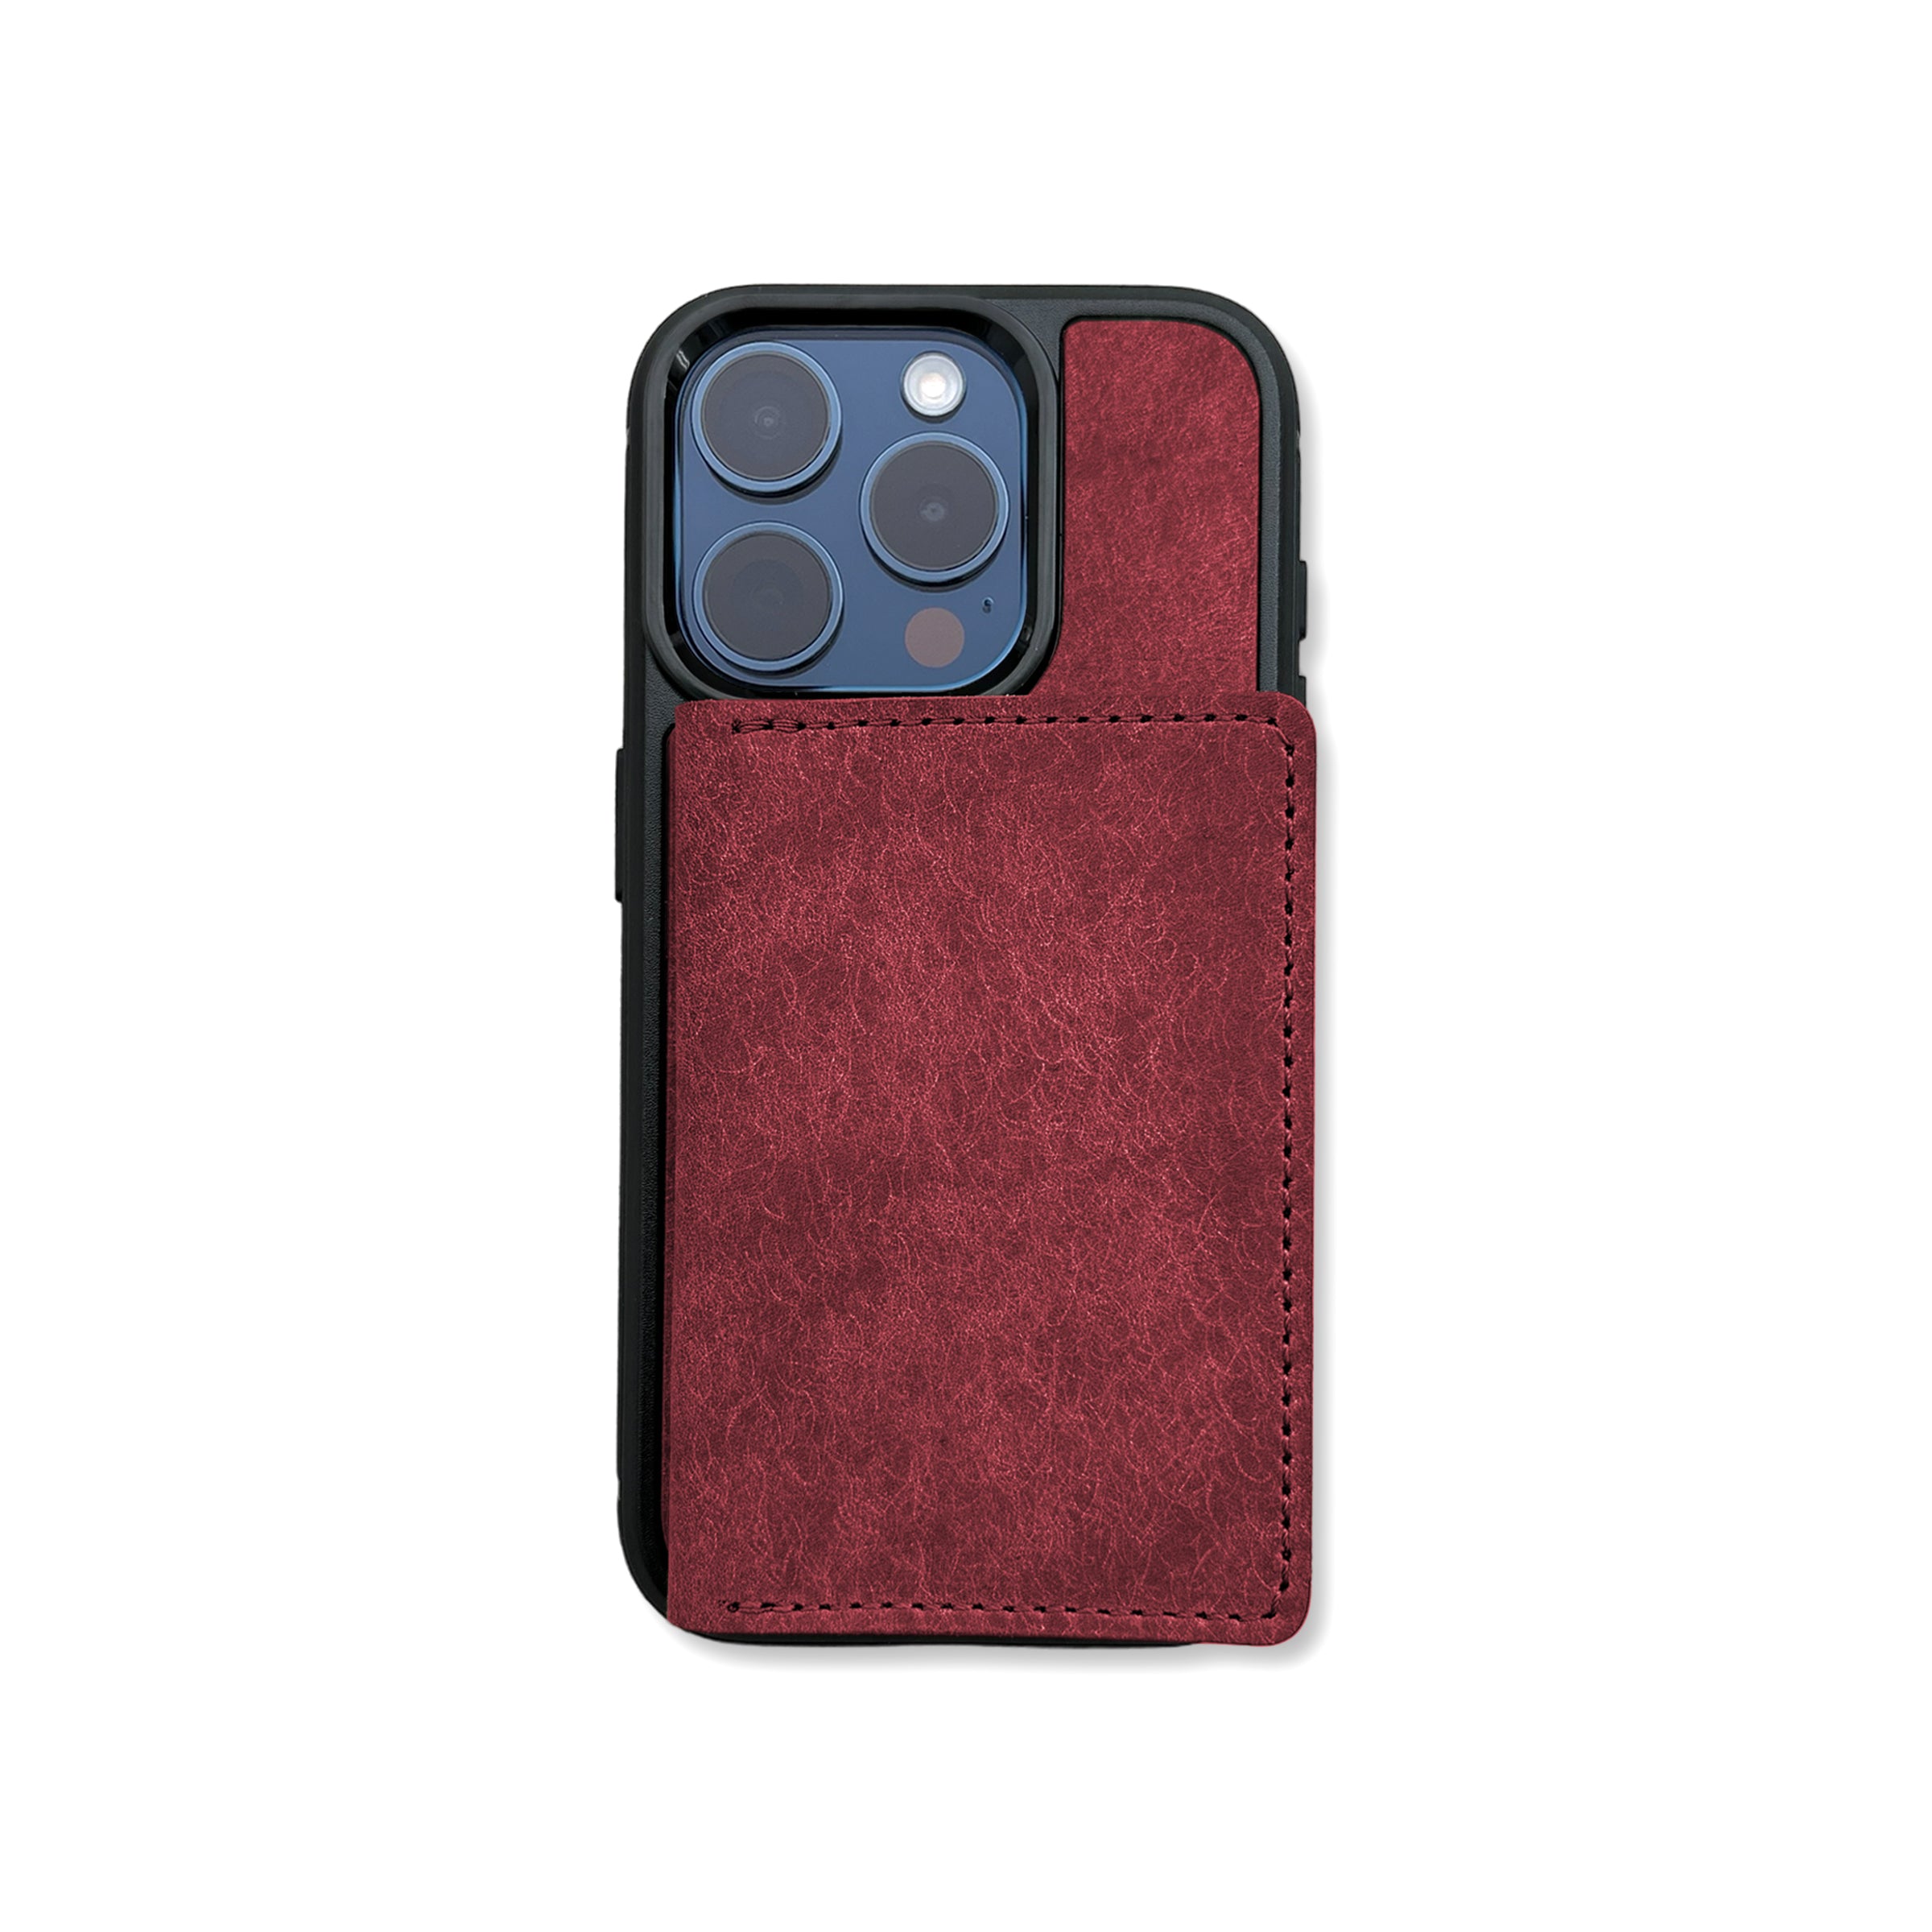 Motto Pueblo iPhone case and wallet